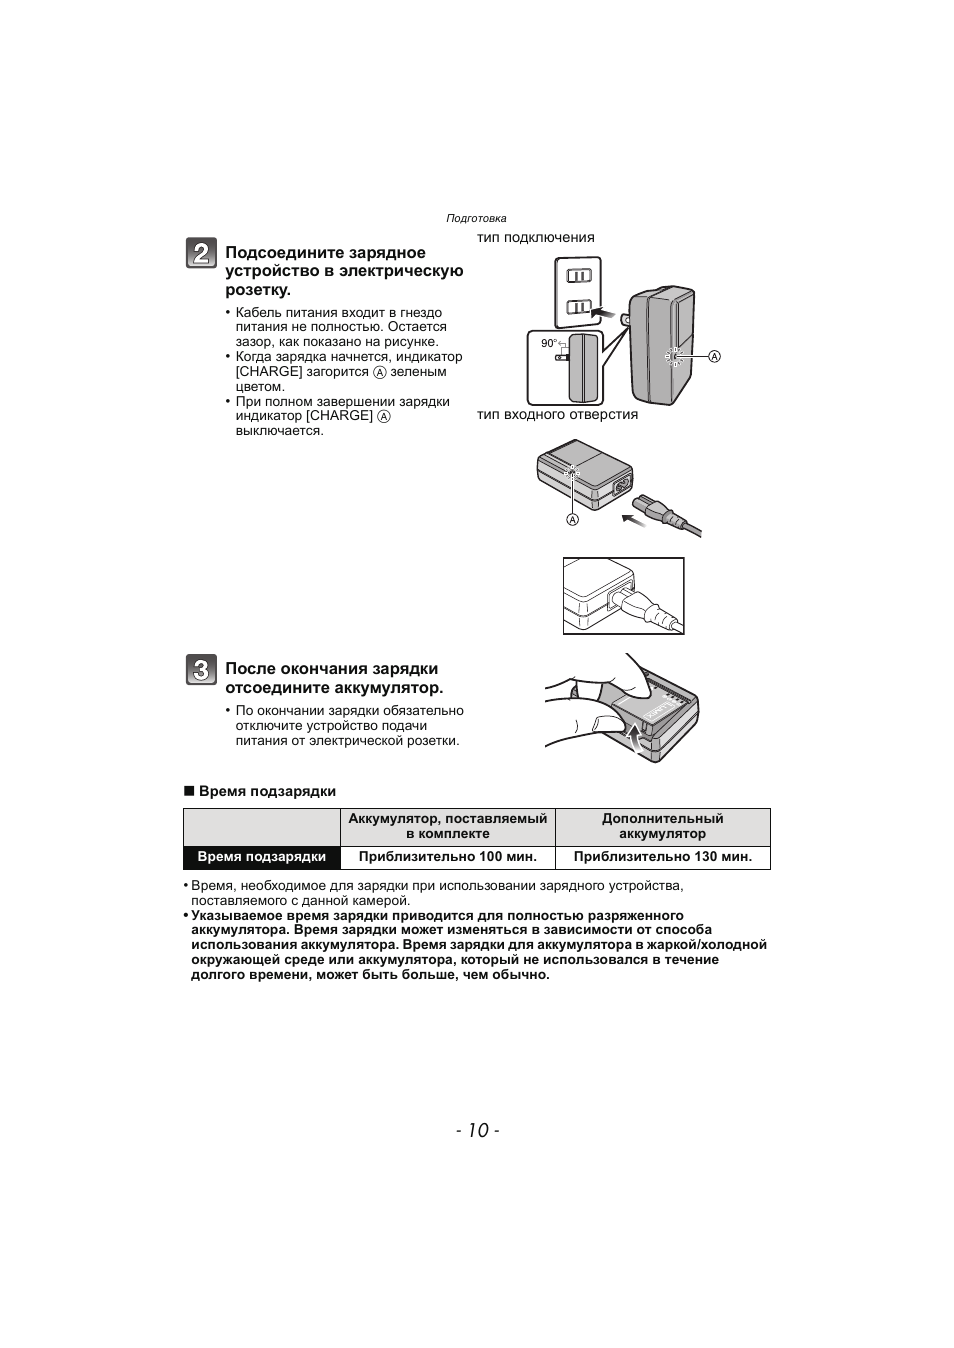 Инструкция по эксплуатации Panasonic KX-MC6020 | Страница 10 / 130